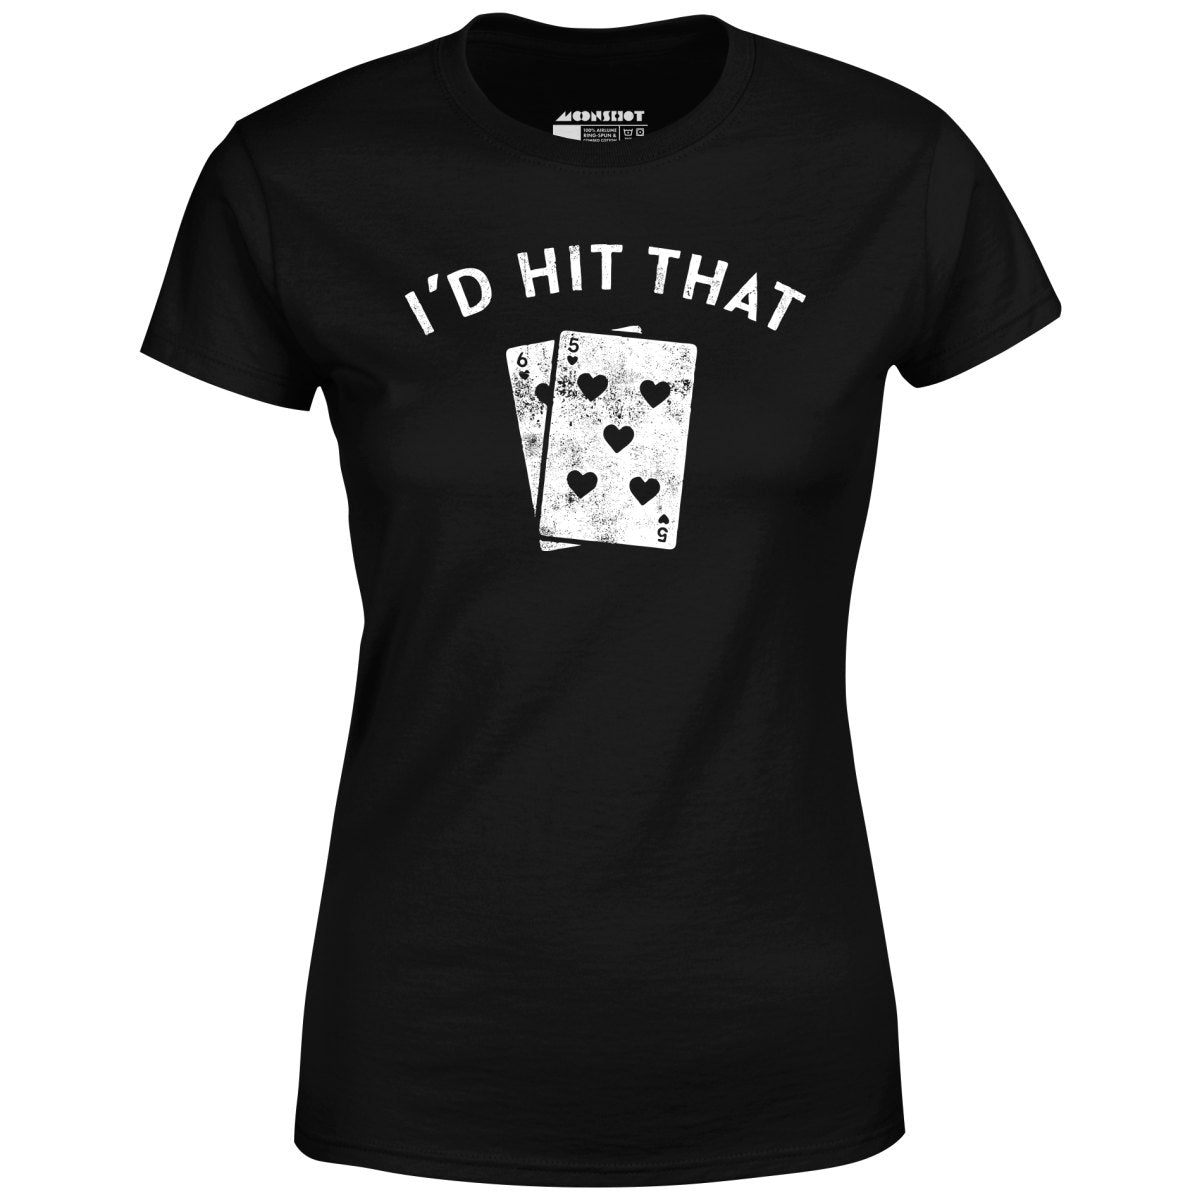 I'd Hit That - Women's T-Shirt